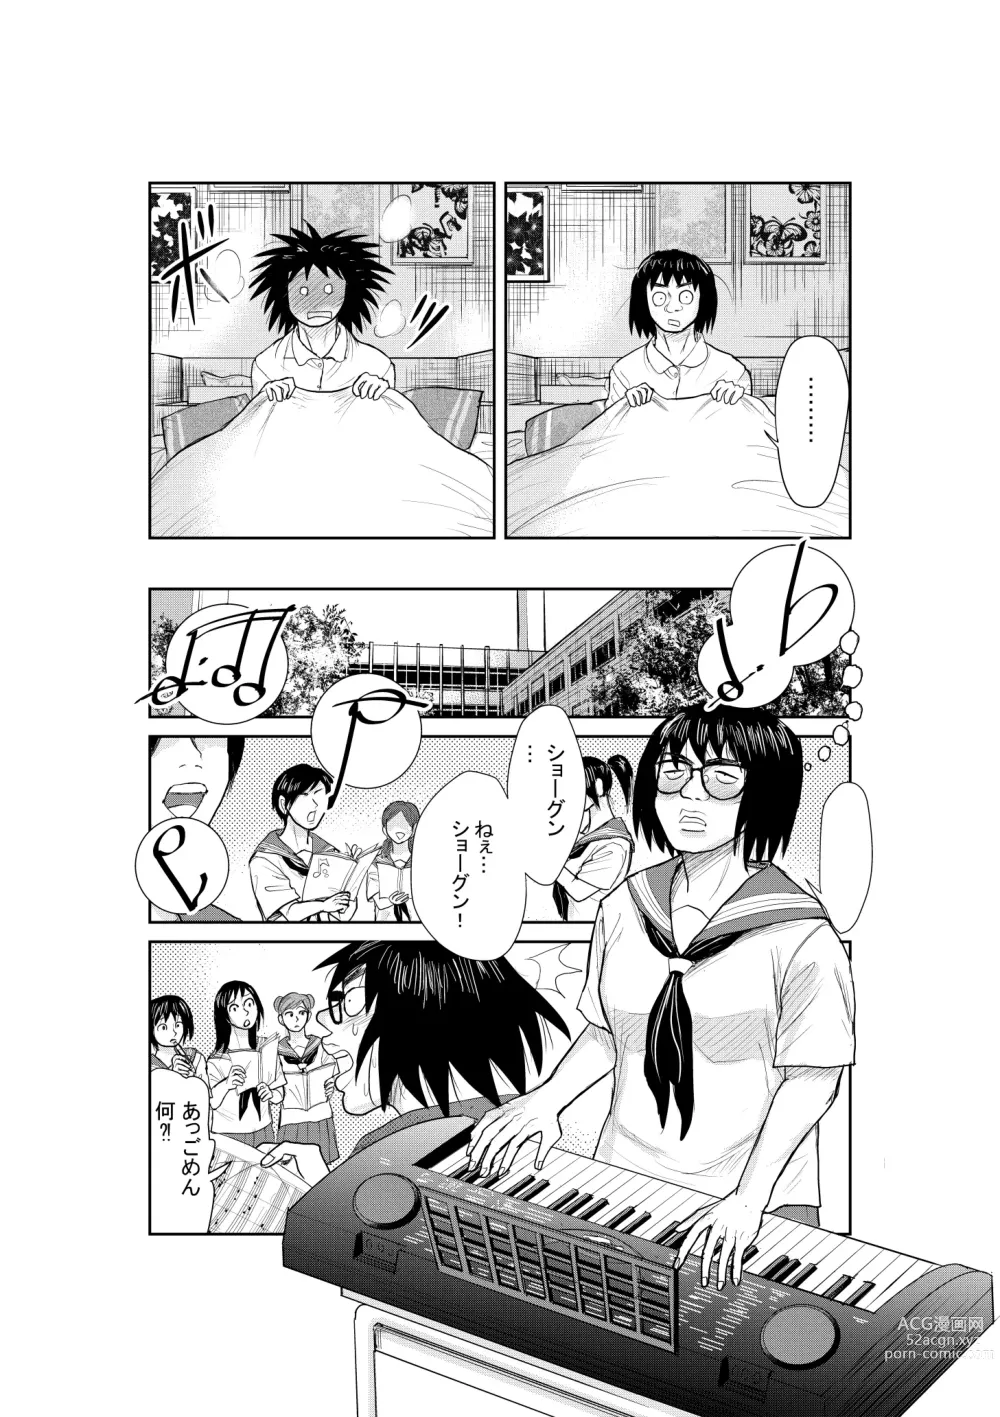 Page 21 of doujinshi Neko